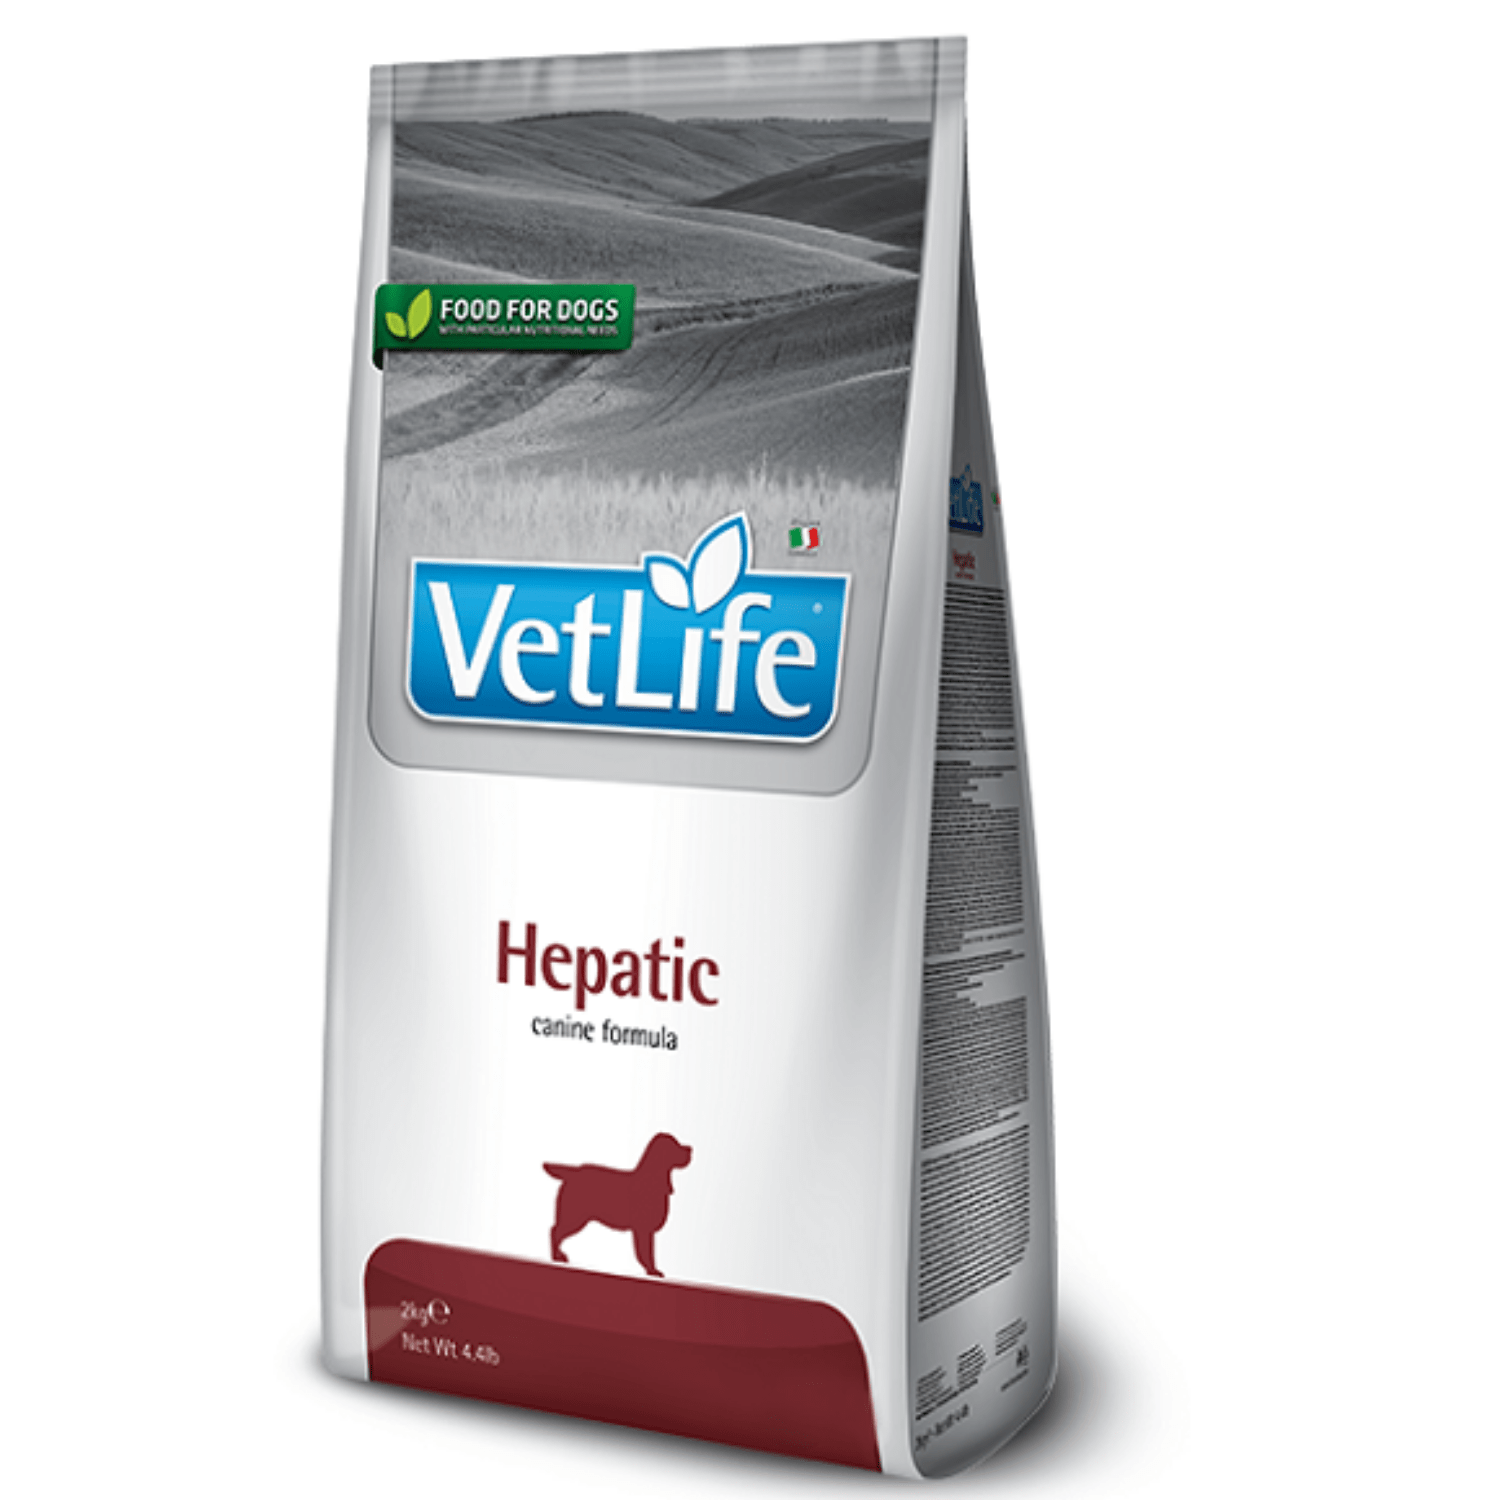 vet life hepatic